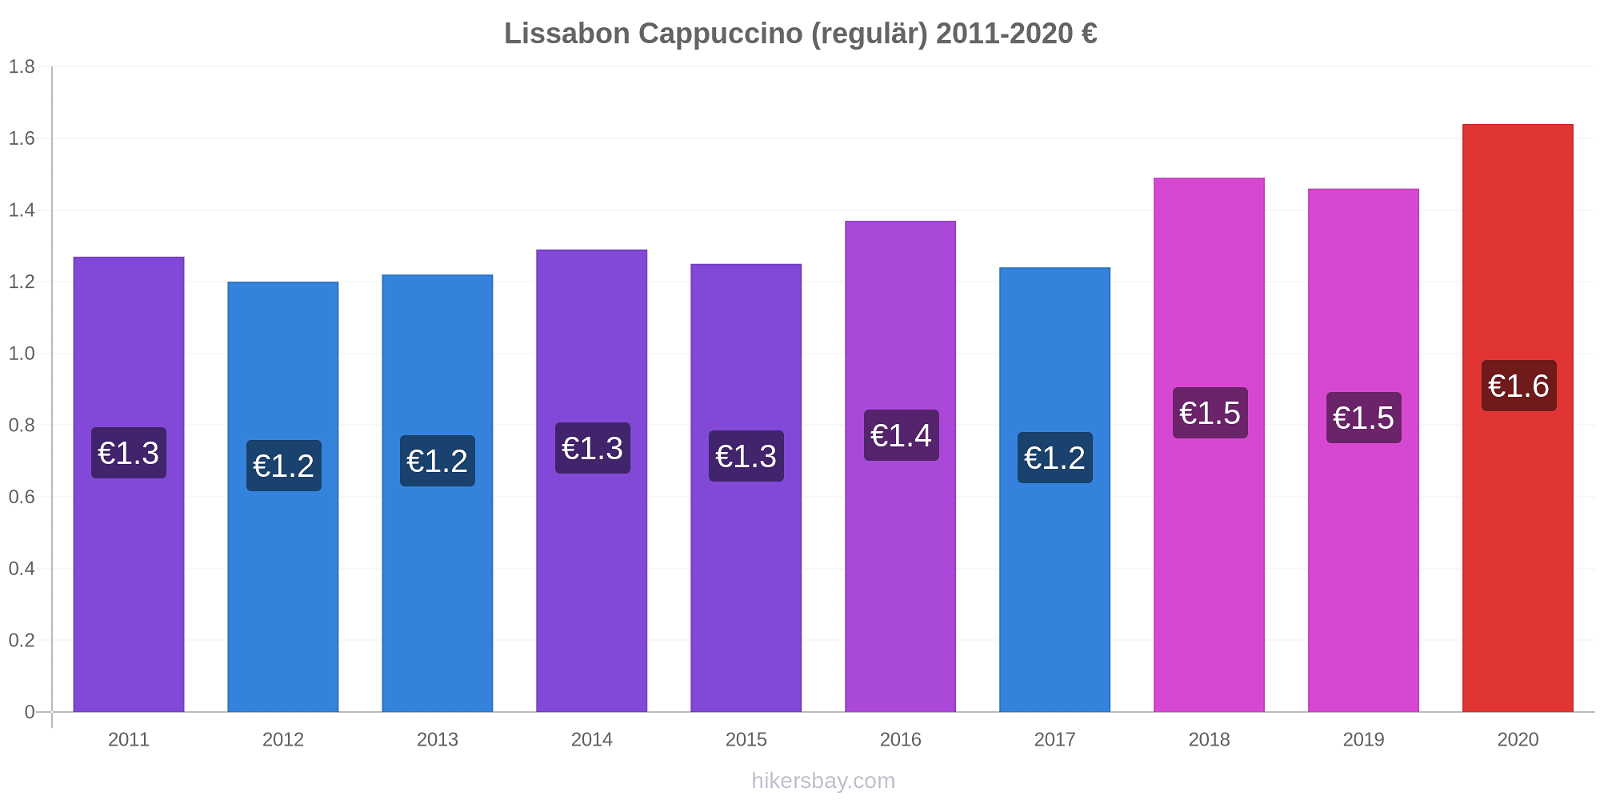 Lissabon Preisänderungen Cappuccino (regulär) hikersbay.com